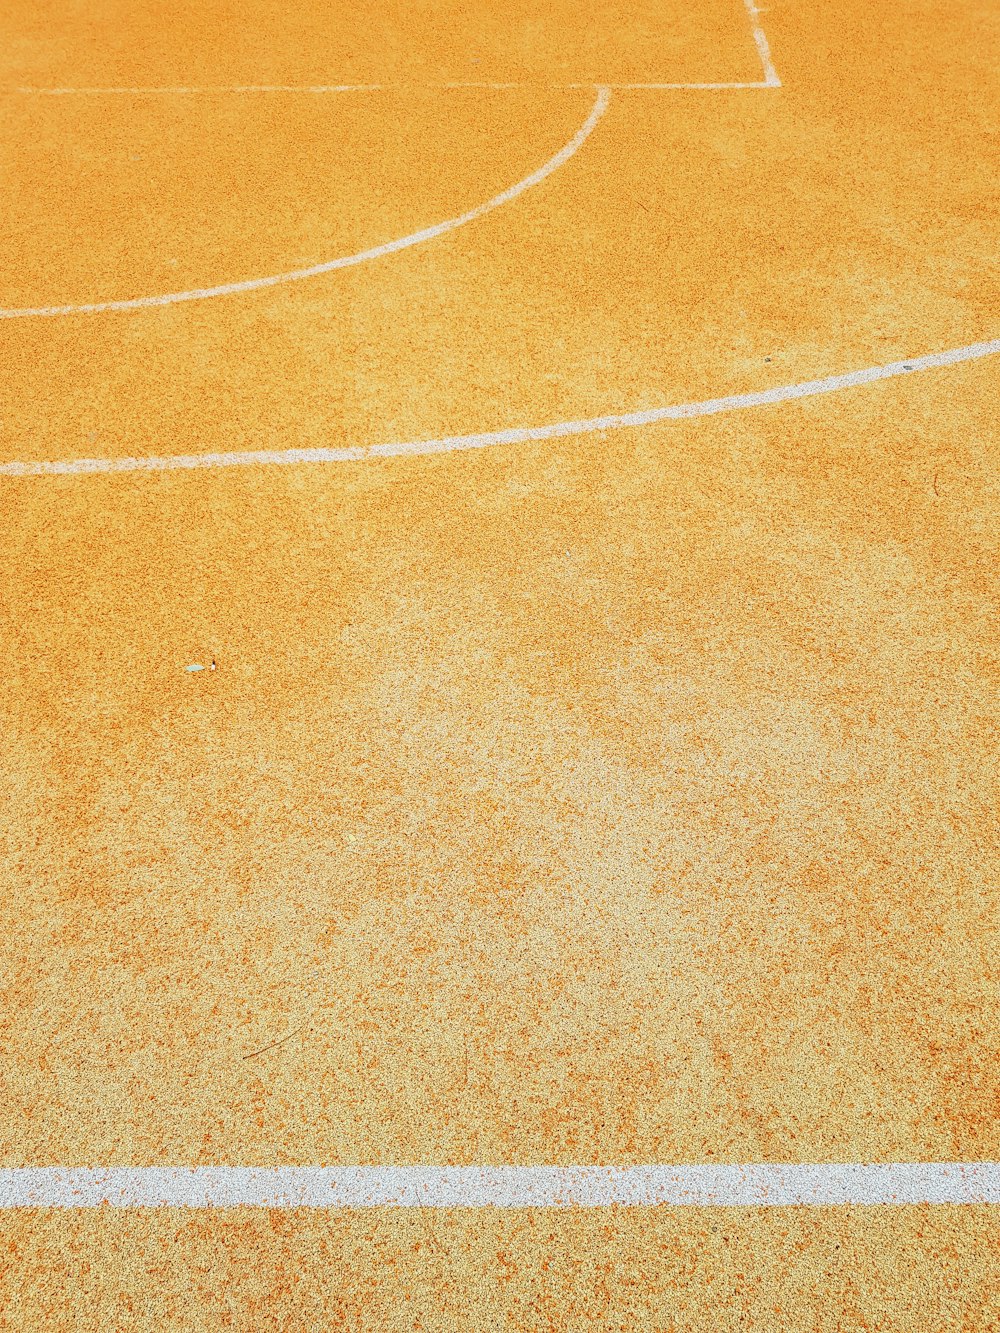 un campo da basket con una linea bianca su di esso